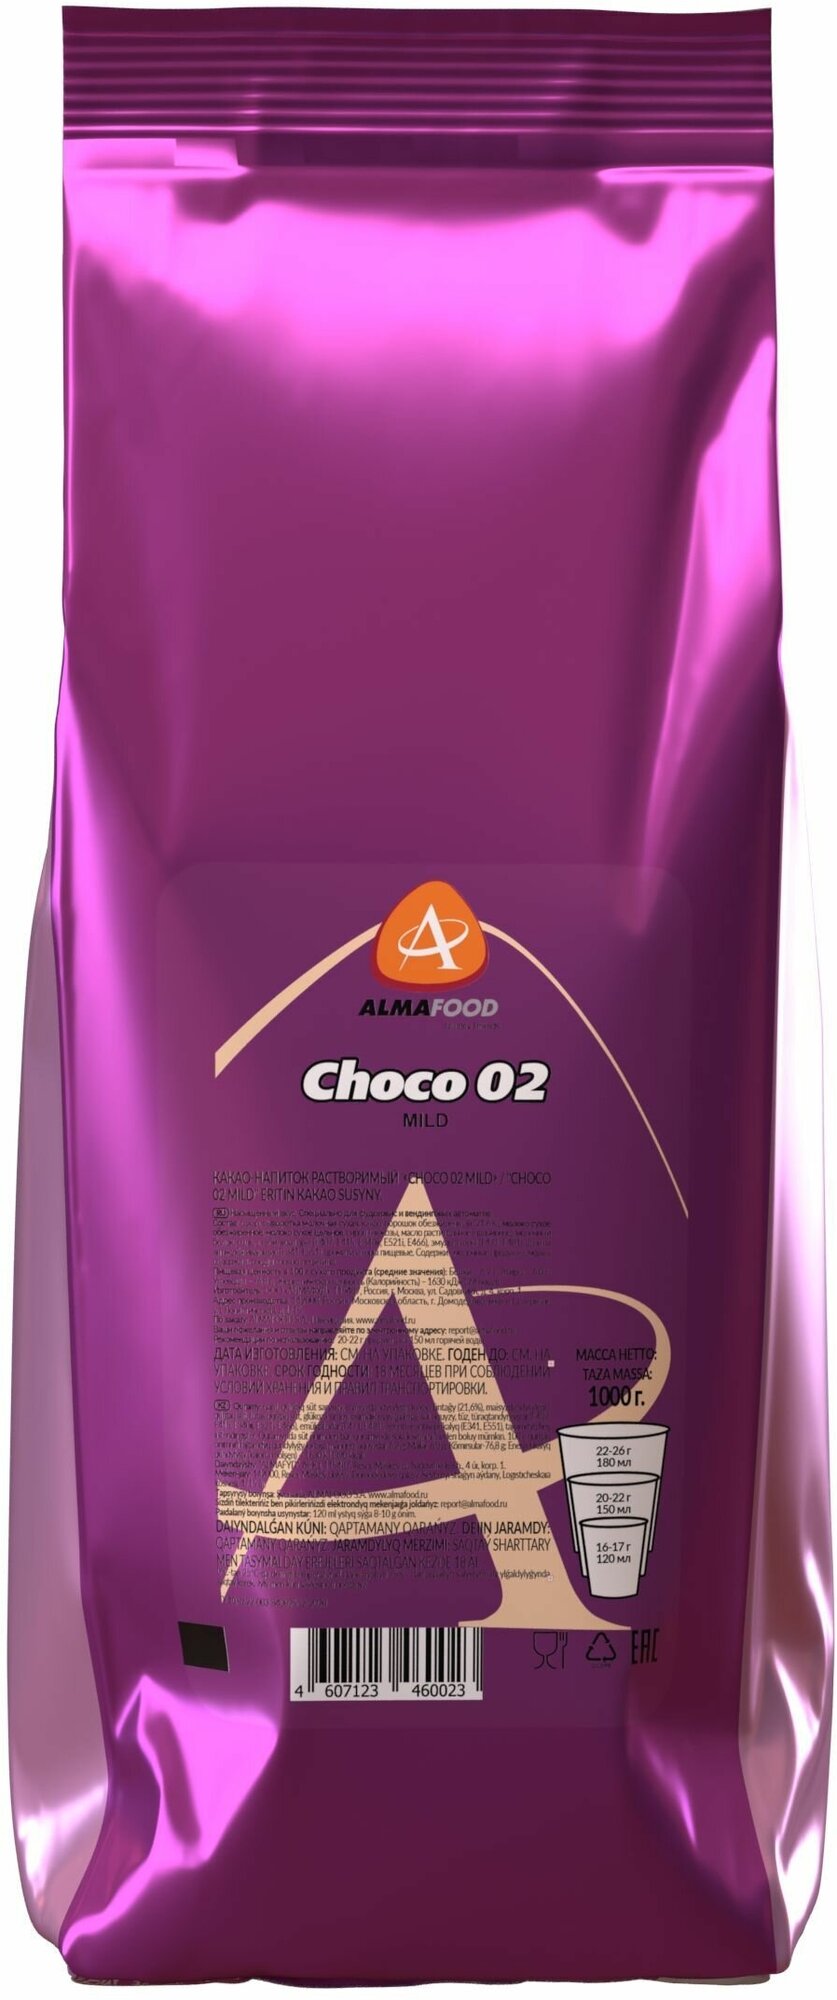 Горячий шоколад Almafood CHOCO 02 MILD для вендинга растворимый напиток 1 кг